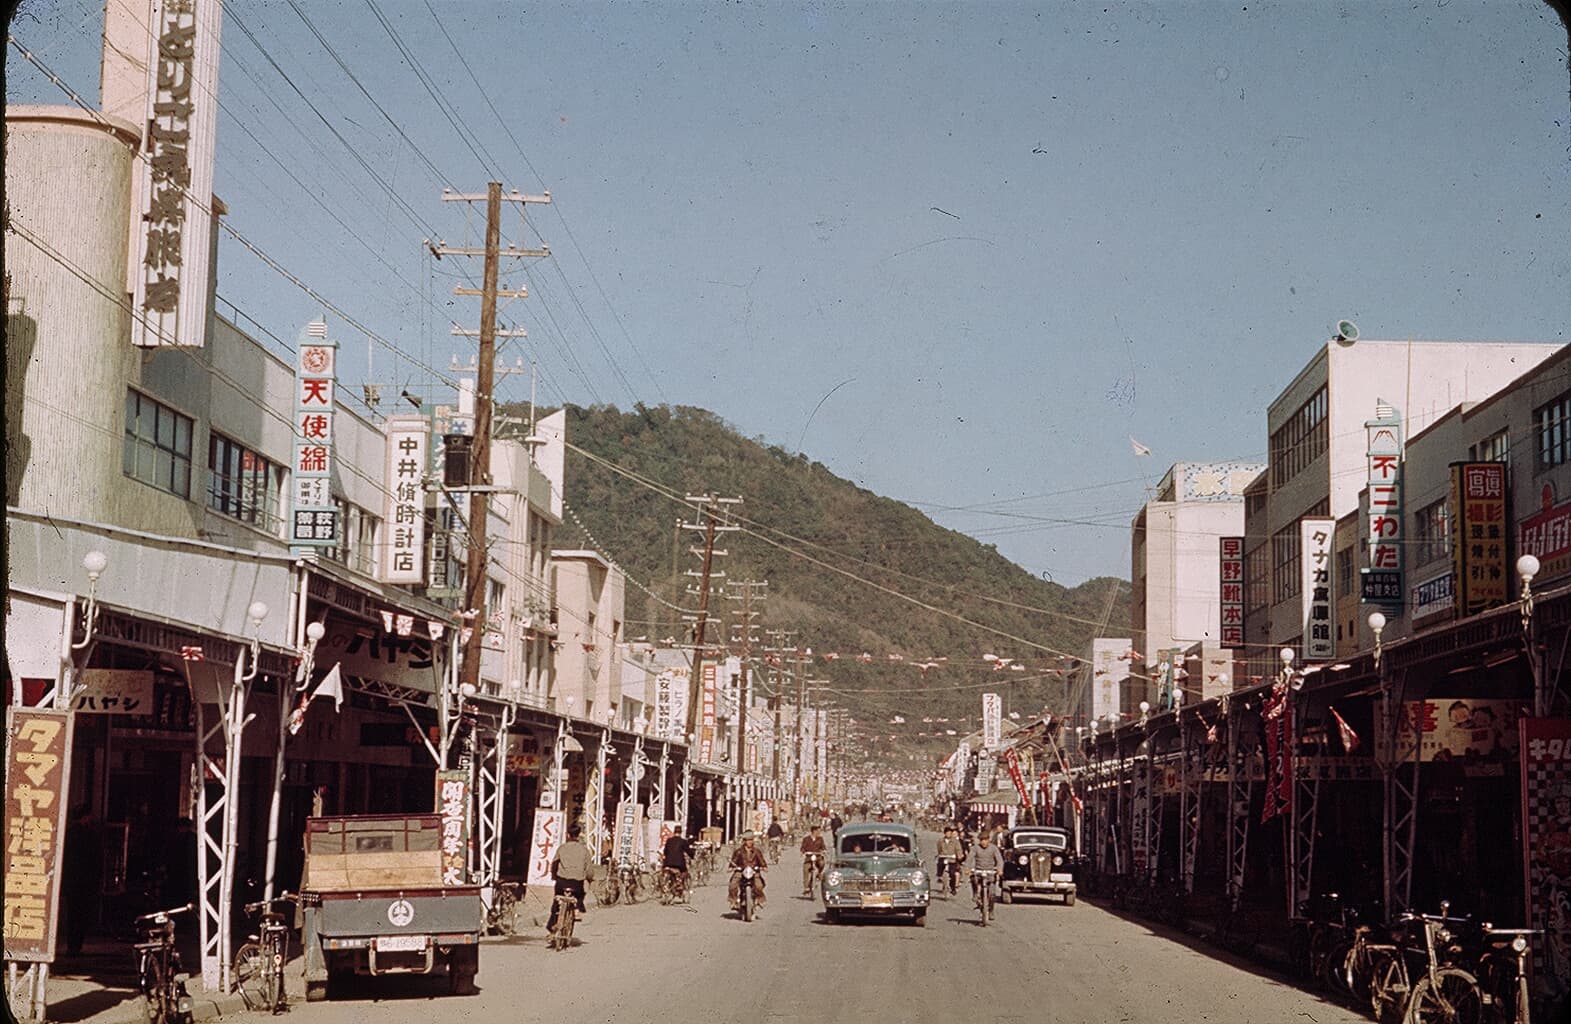 若桜街道's image 1